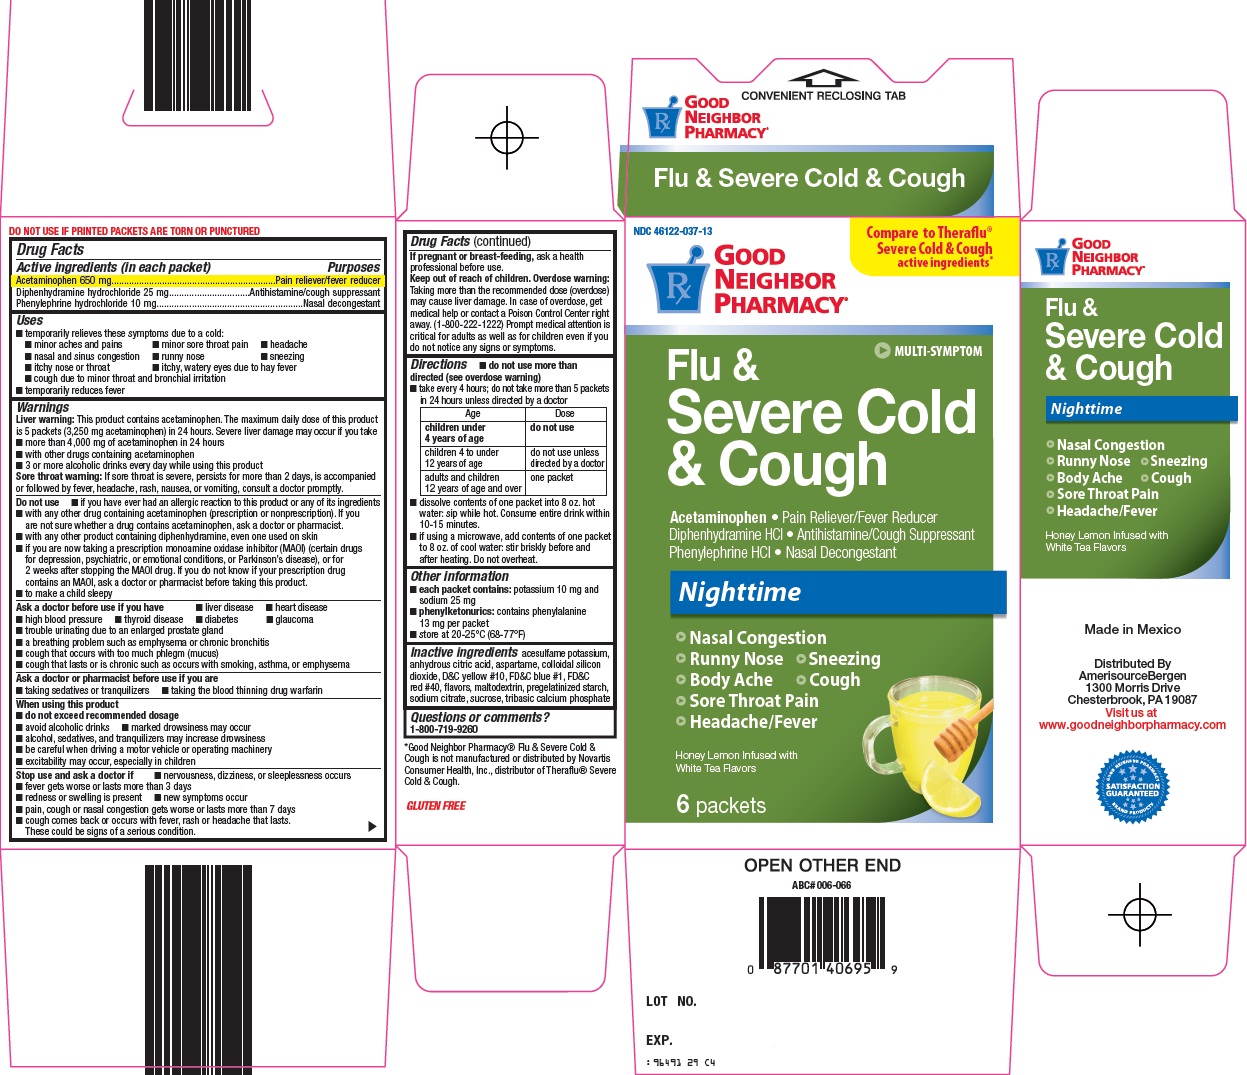 Amerisource Bergen Flu & Severe Cold & Cough